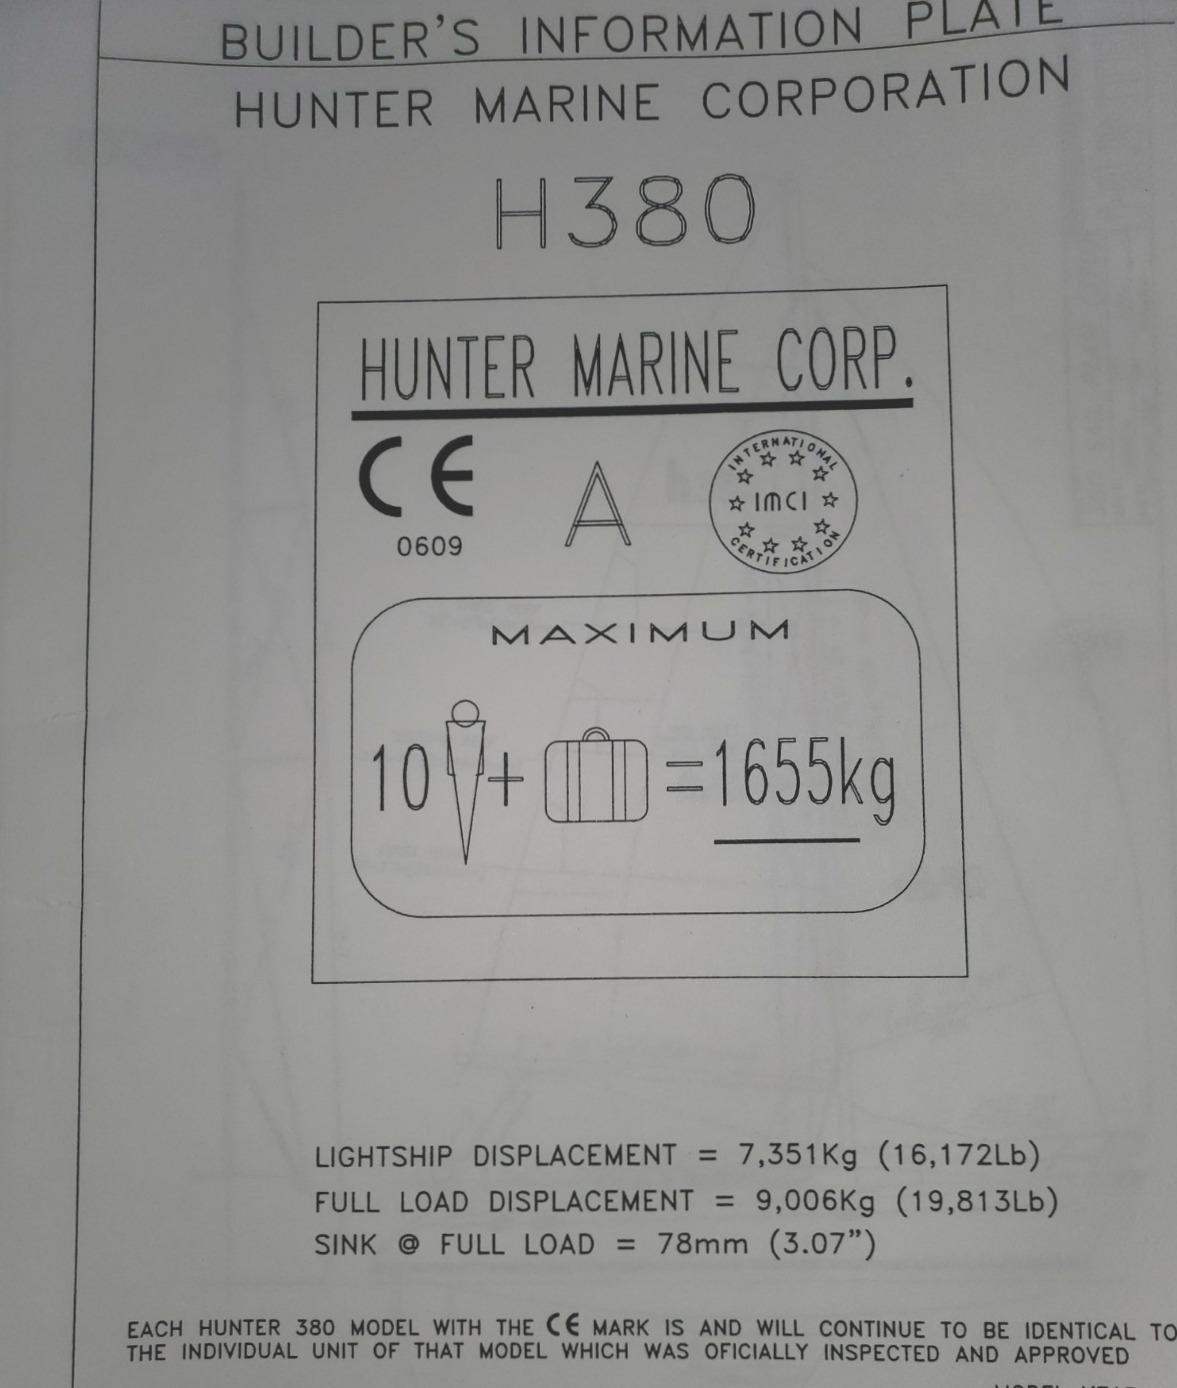 2001 Hunter 380